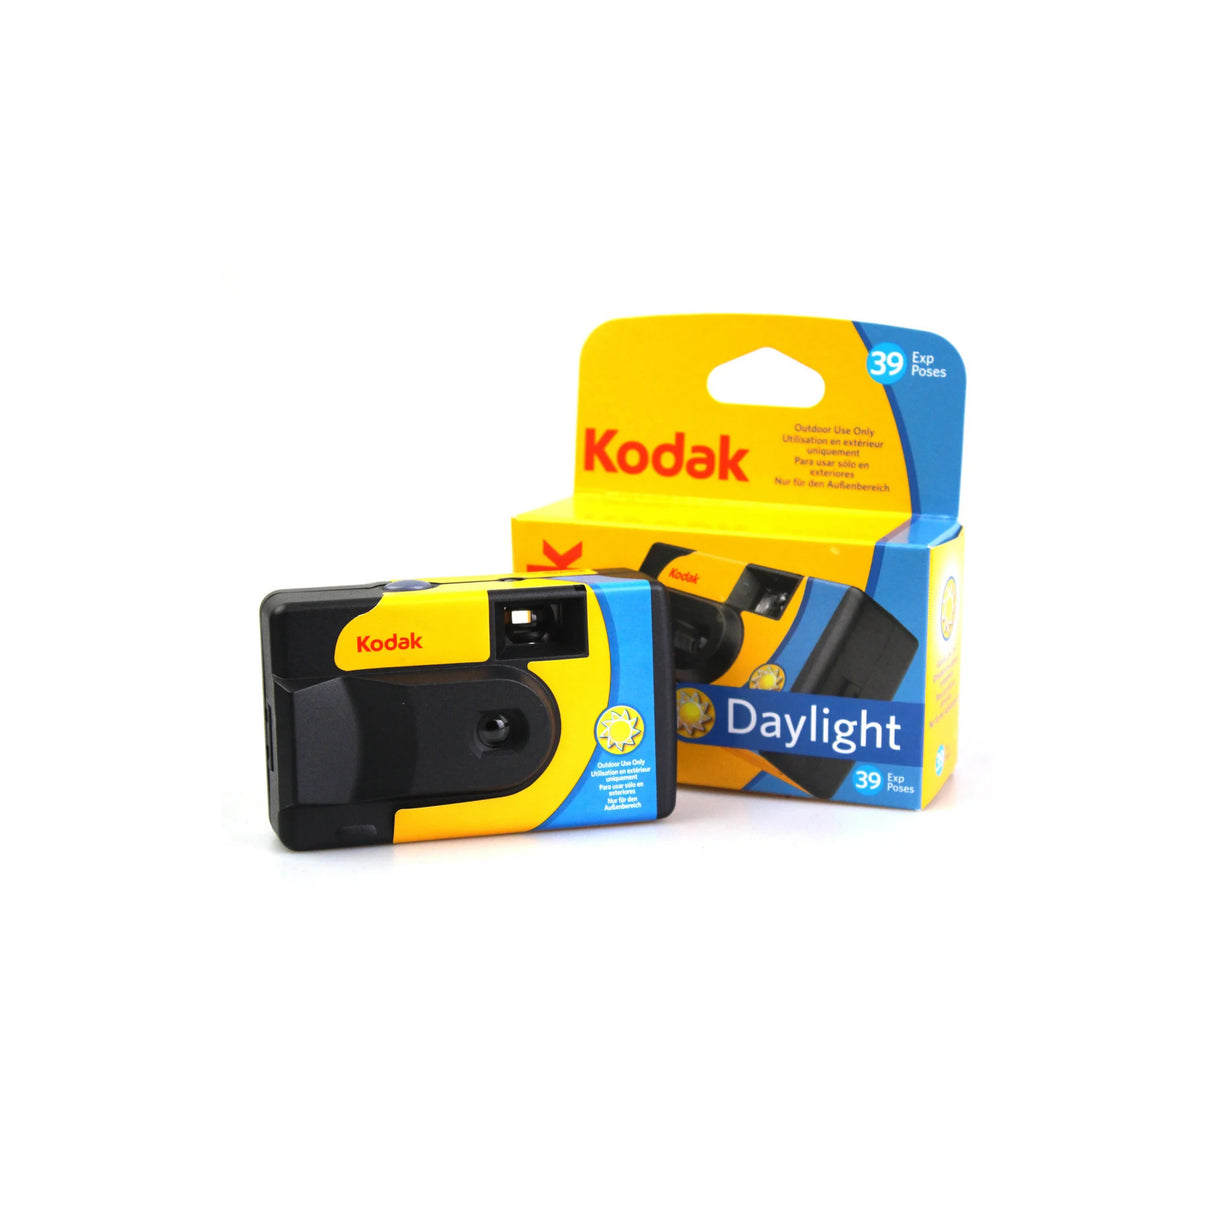 Kodak Daylight single use camera